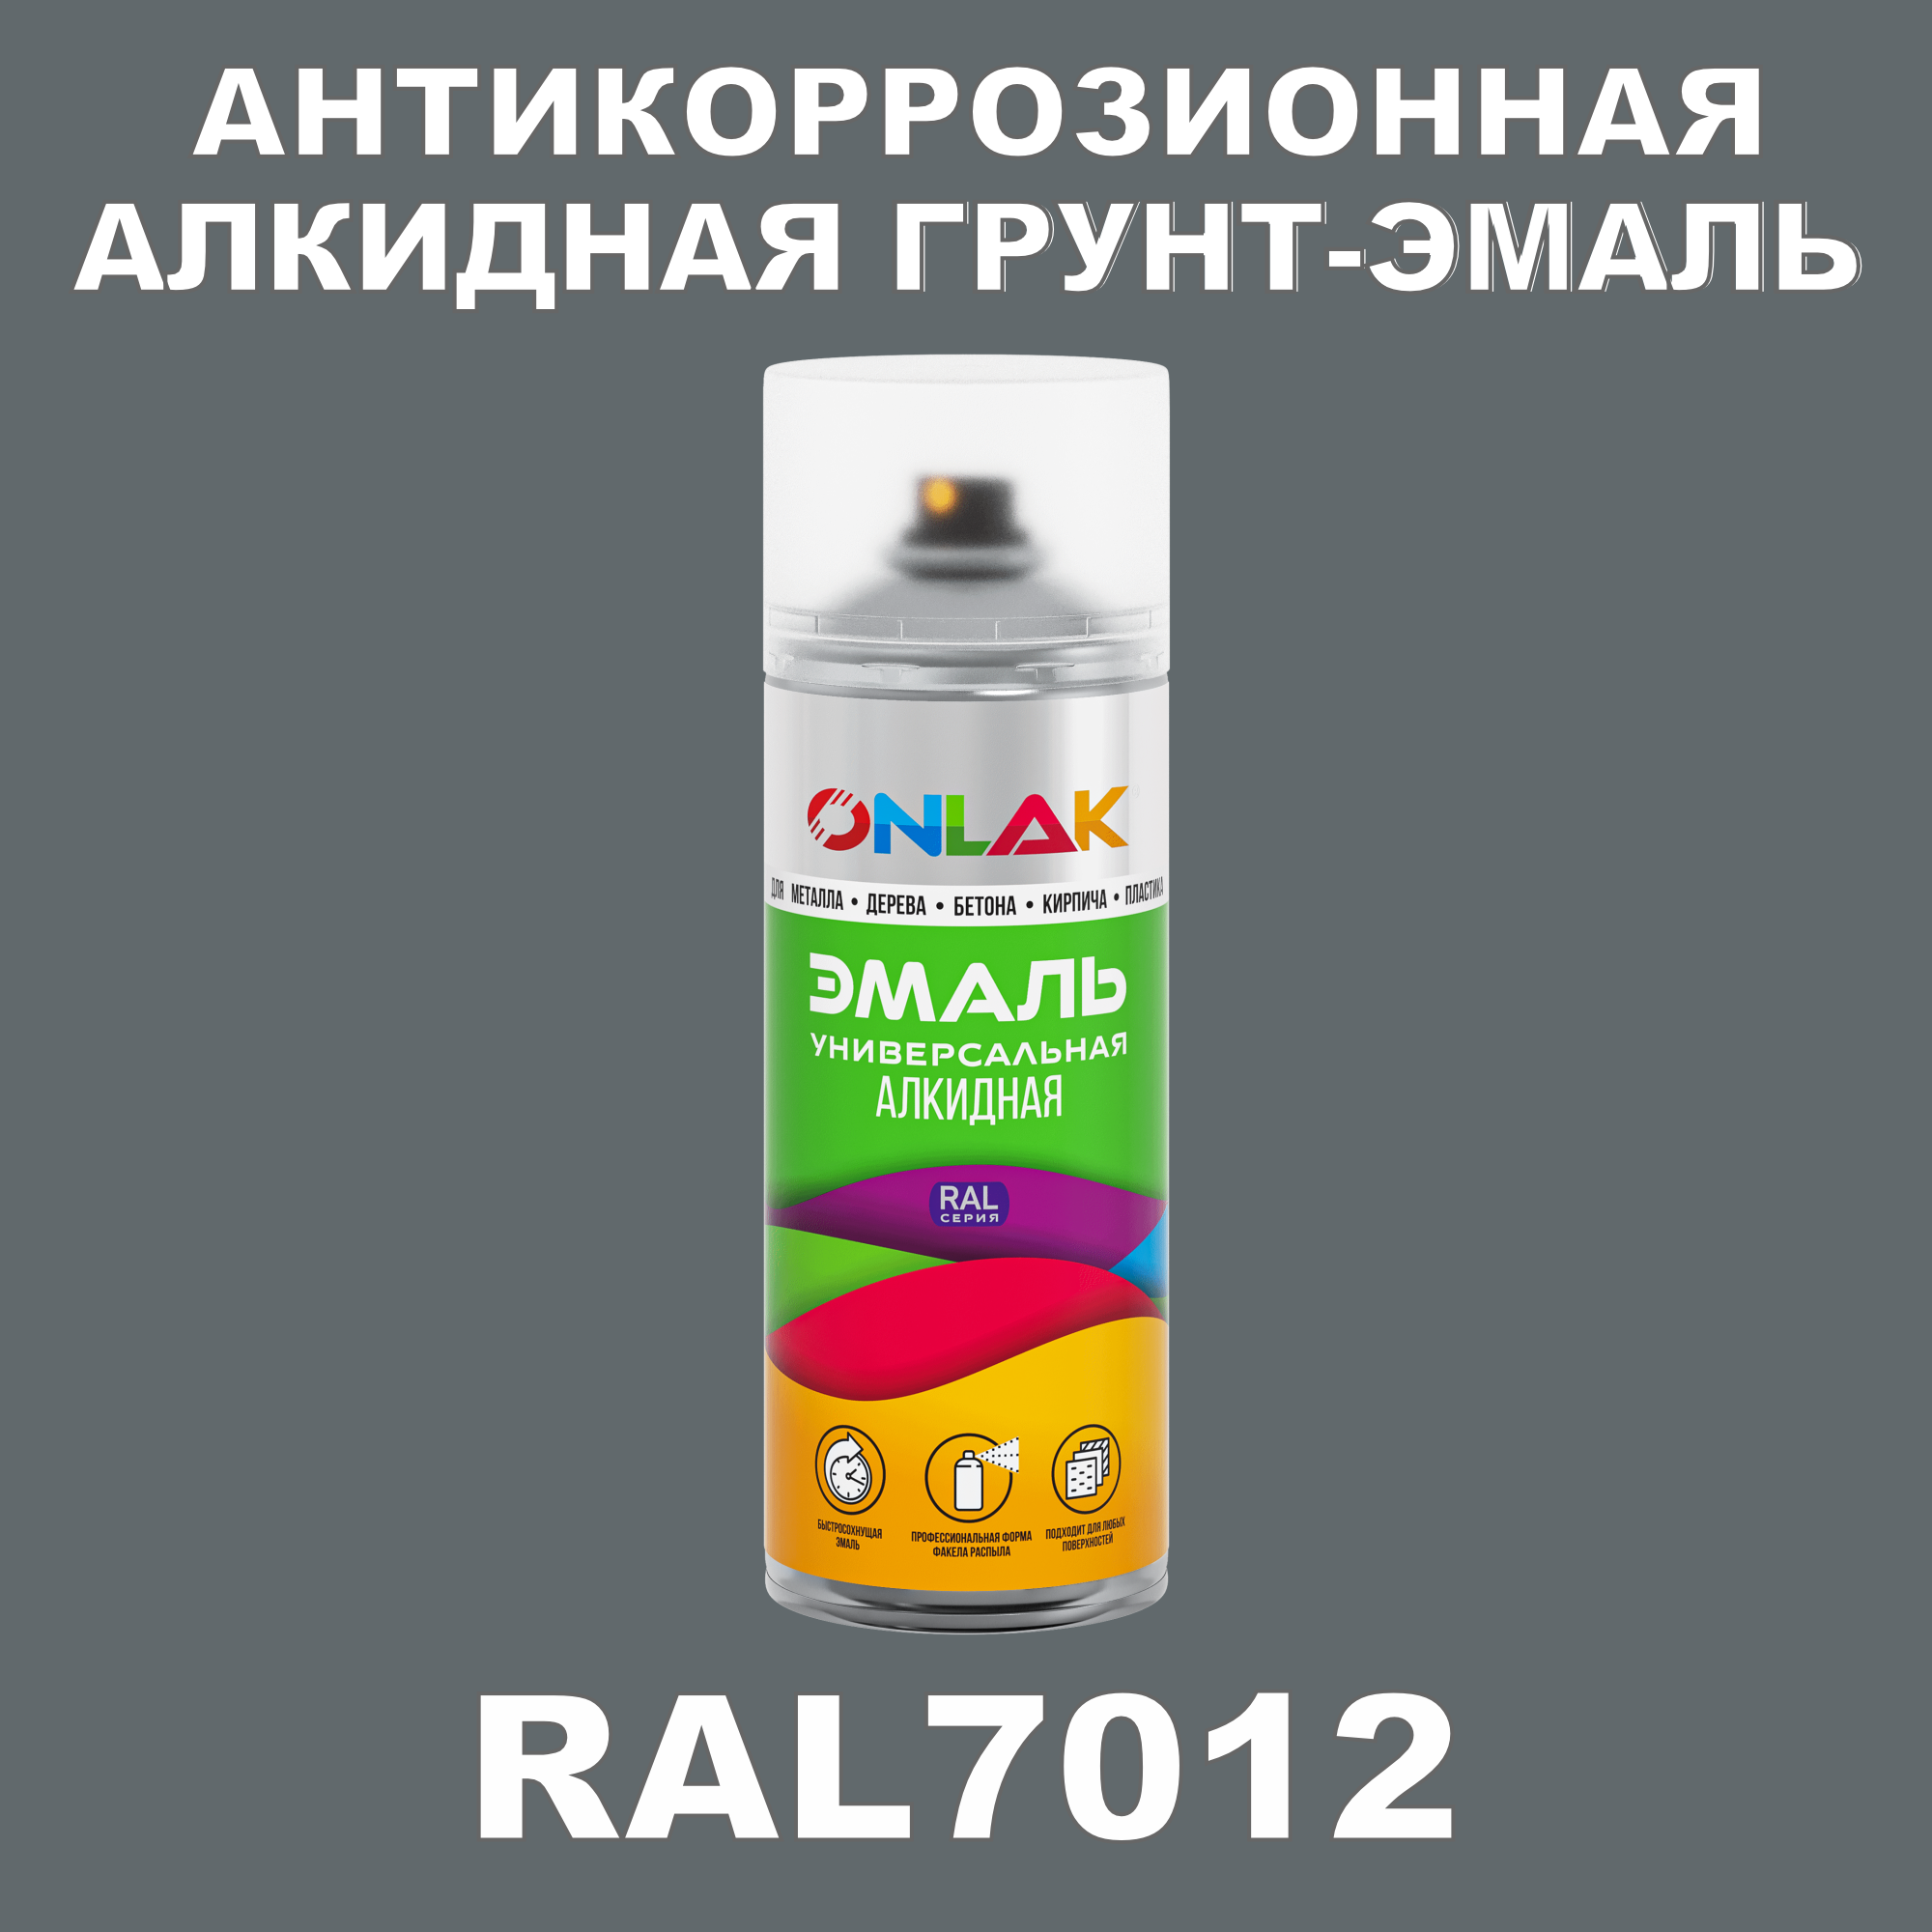 Антикоррозионная грунт-эмаль ONLAK RAL7012 полуматовая для металла и защиты от ржавчины